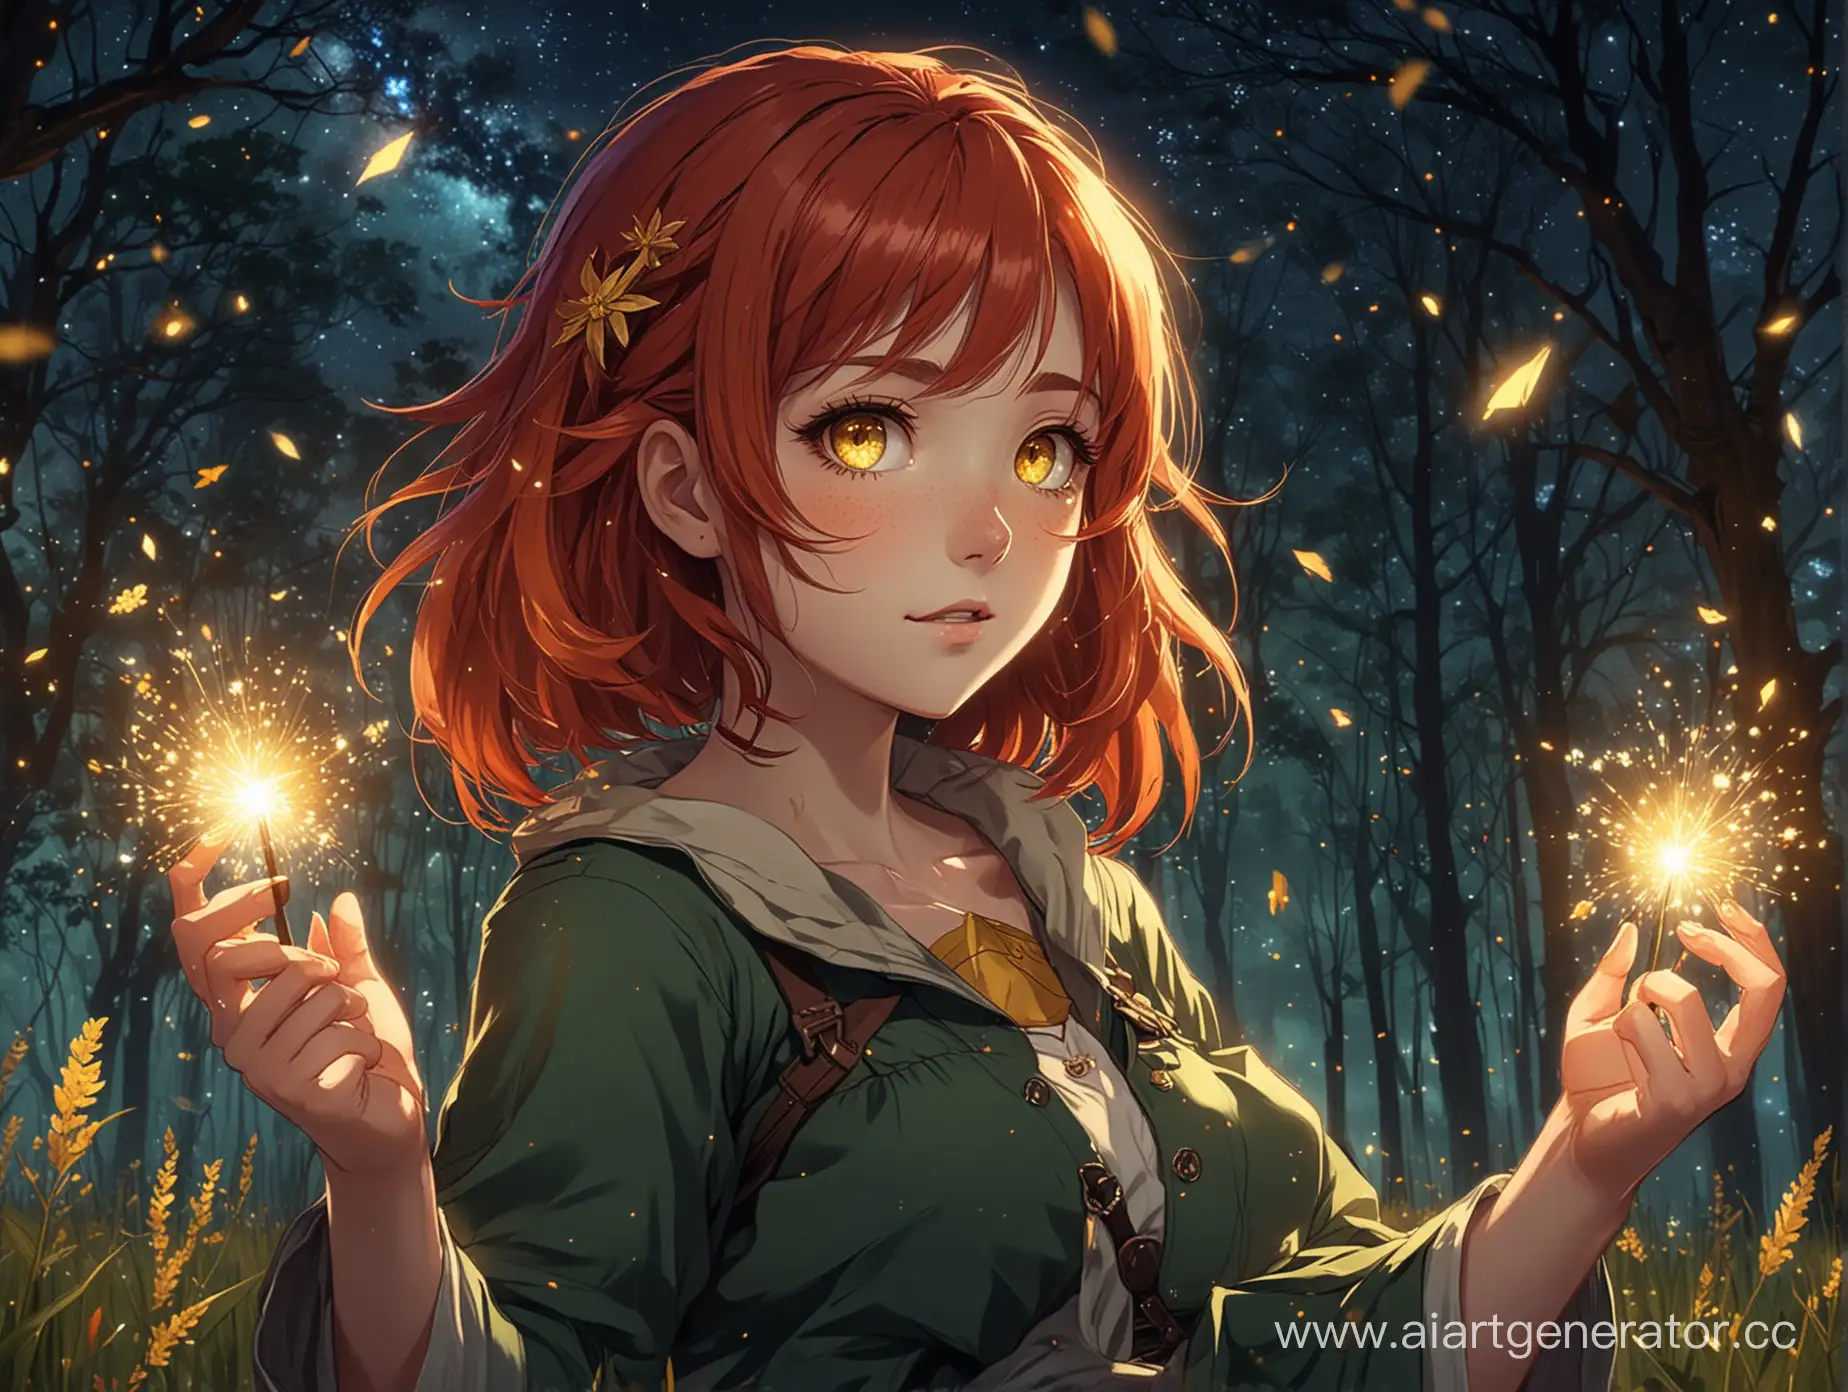 Аниме девушка с рыжими волосами и жёлтыми глазами в пионерской форме. В руках она держит огонёк ярких воспоминаний. Она смотрит вперёд, а позади неё ночное небо с огромным количеством звёзд, высокие мощные деревья и поле с сияющей изумрудной травой и светлячки